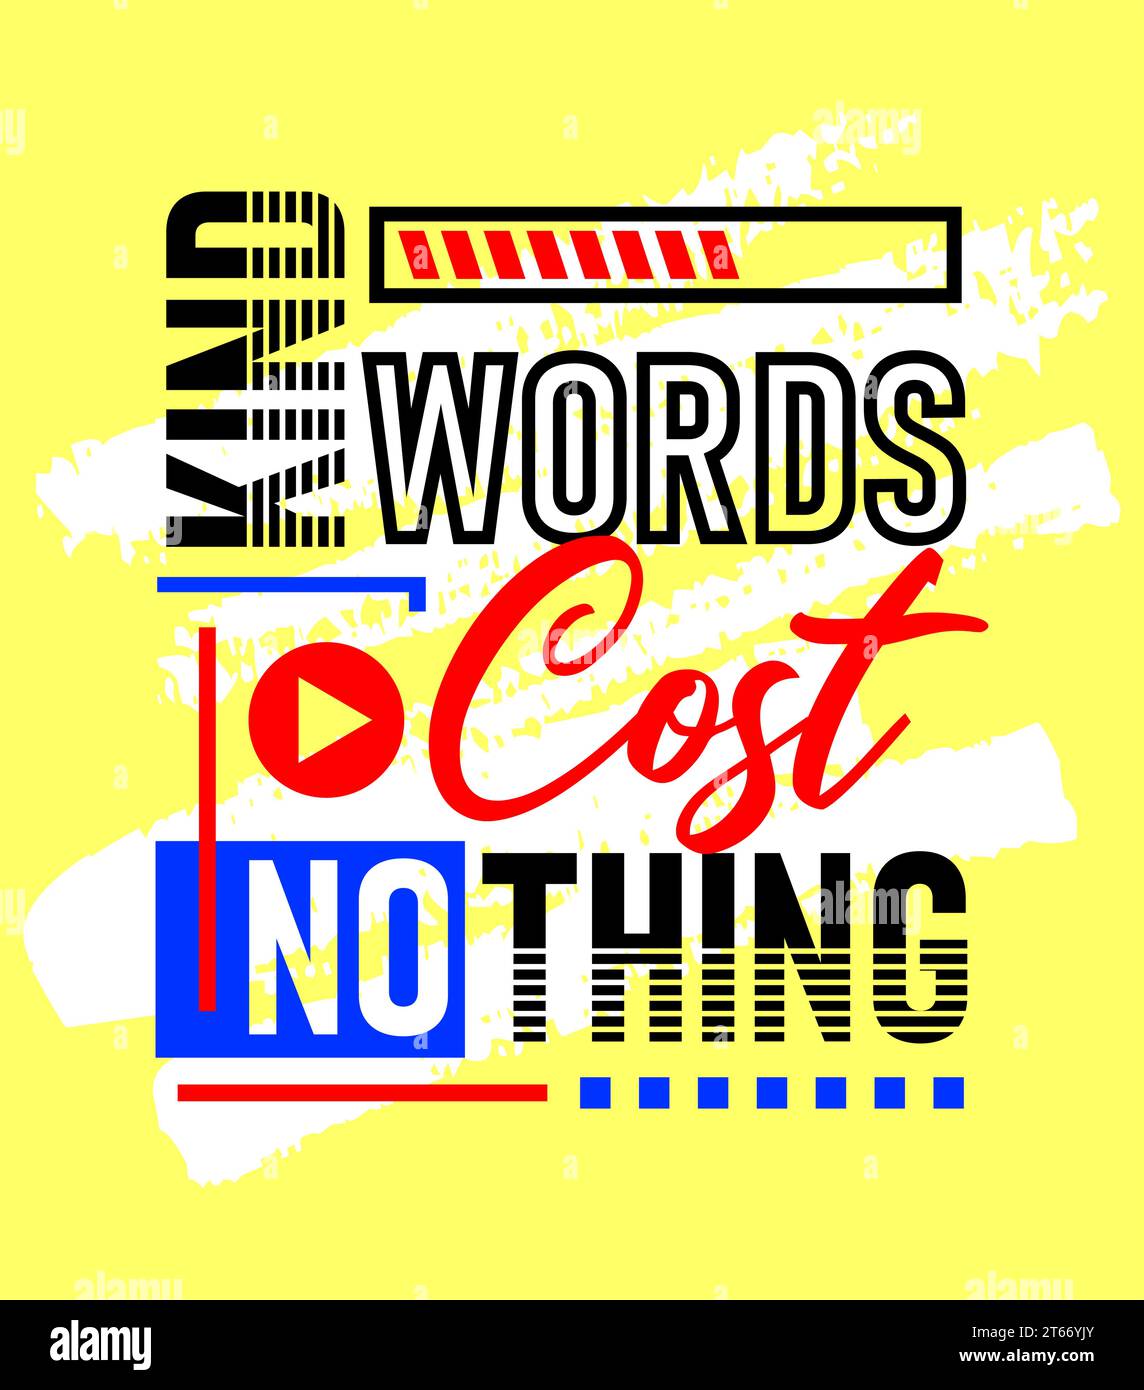 Freundliche Worte Kosten nichts motivierendes inspirierendes Zitat, kurze Sätze Zitate, Typografie, Slogans Grunge Stock Vektor